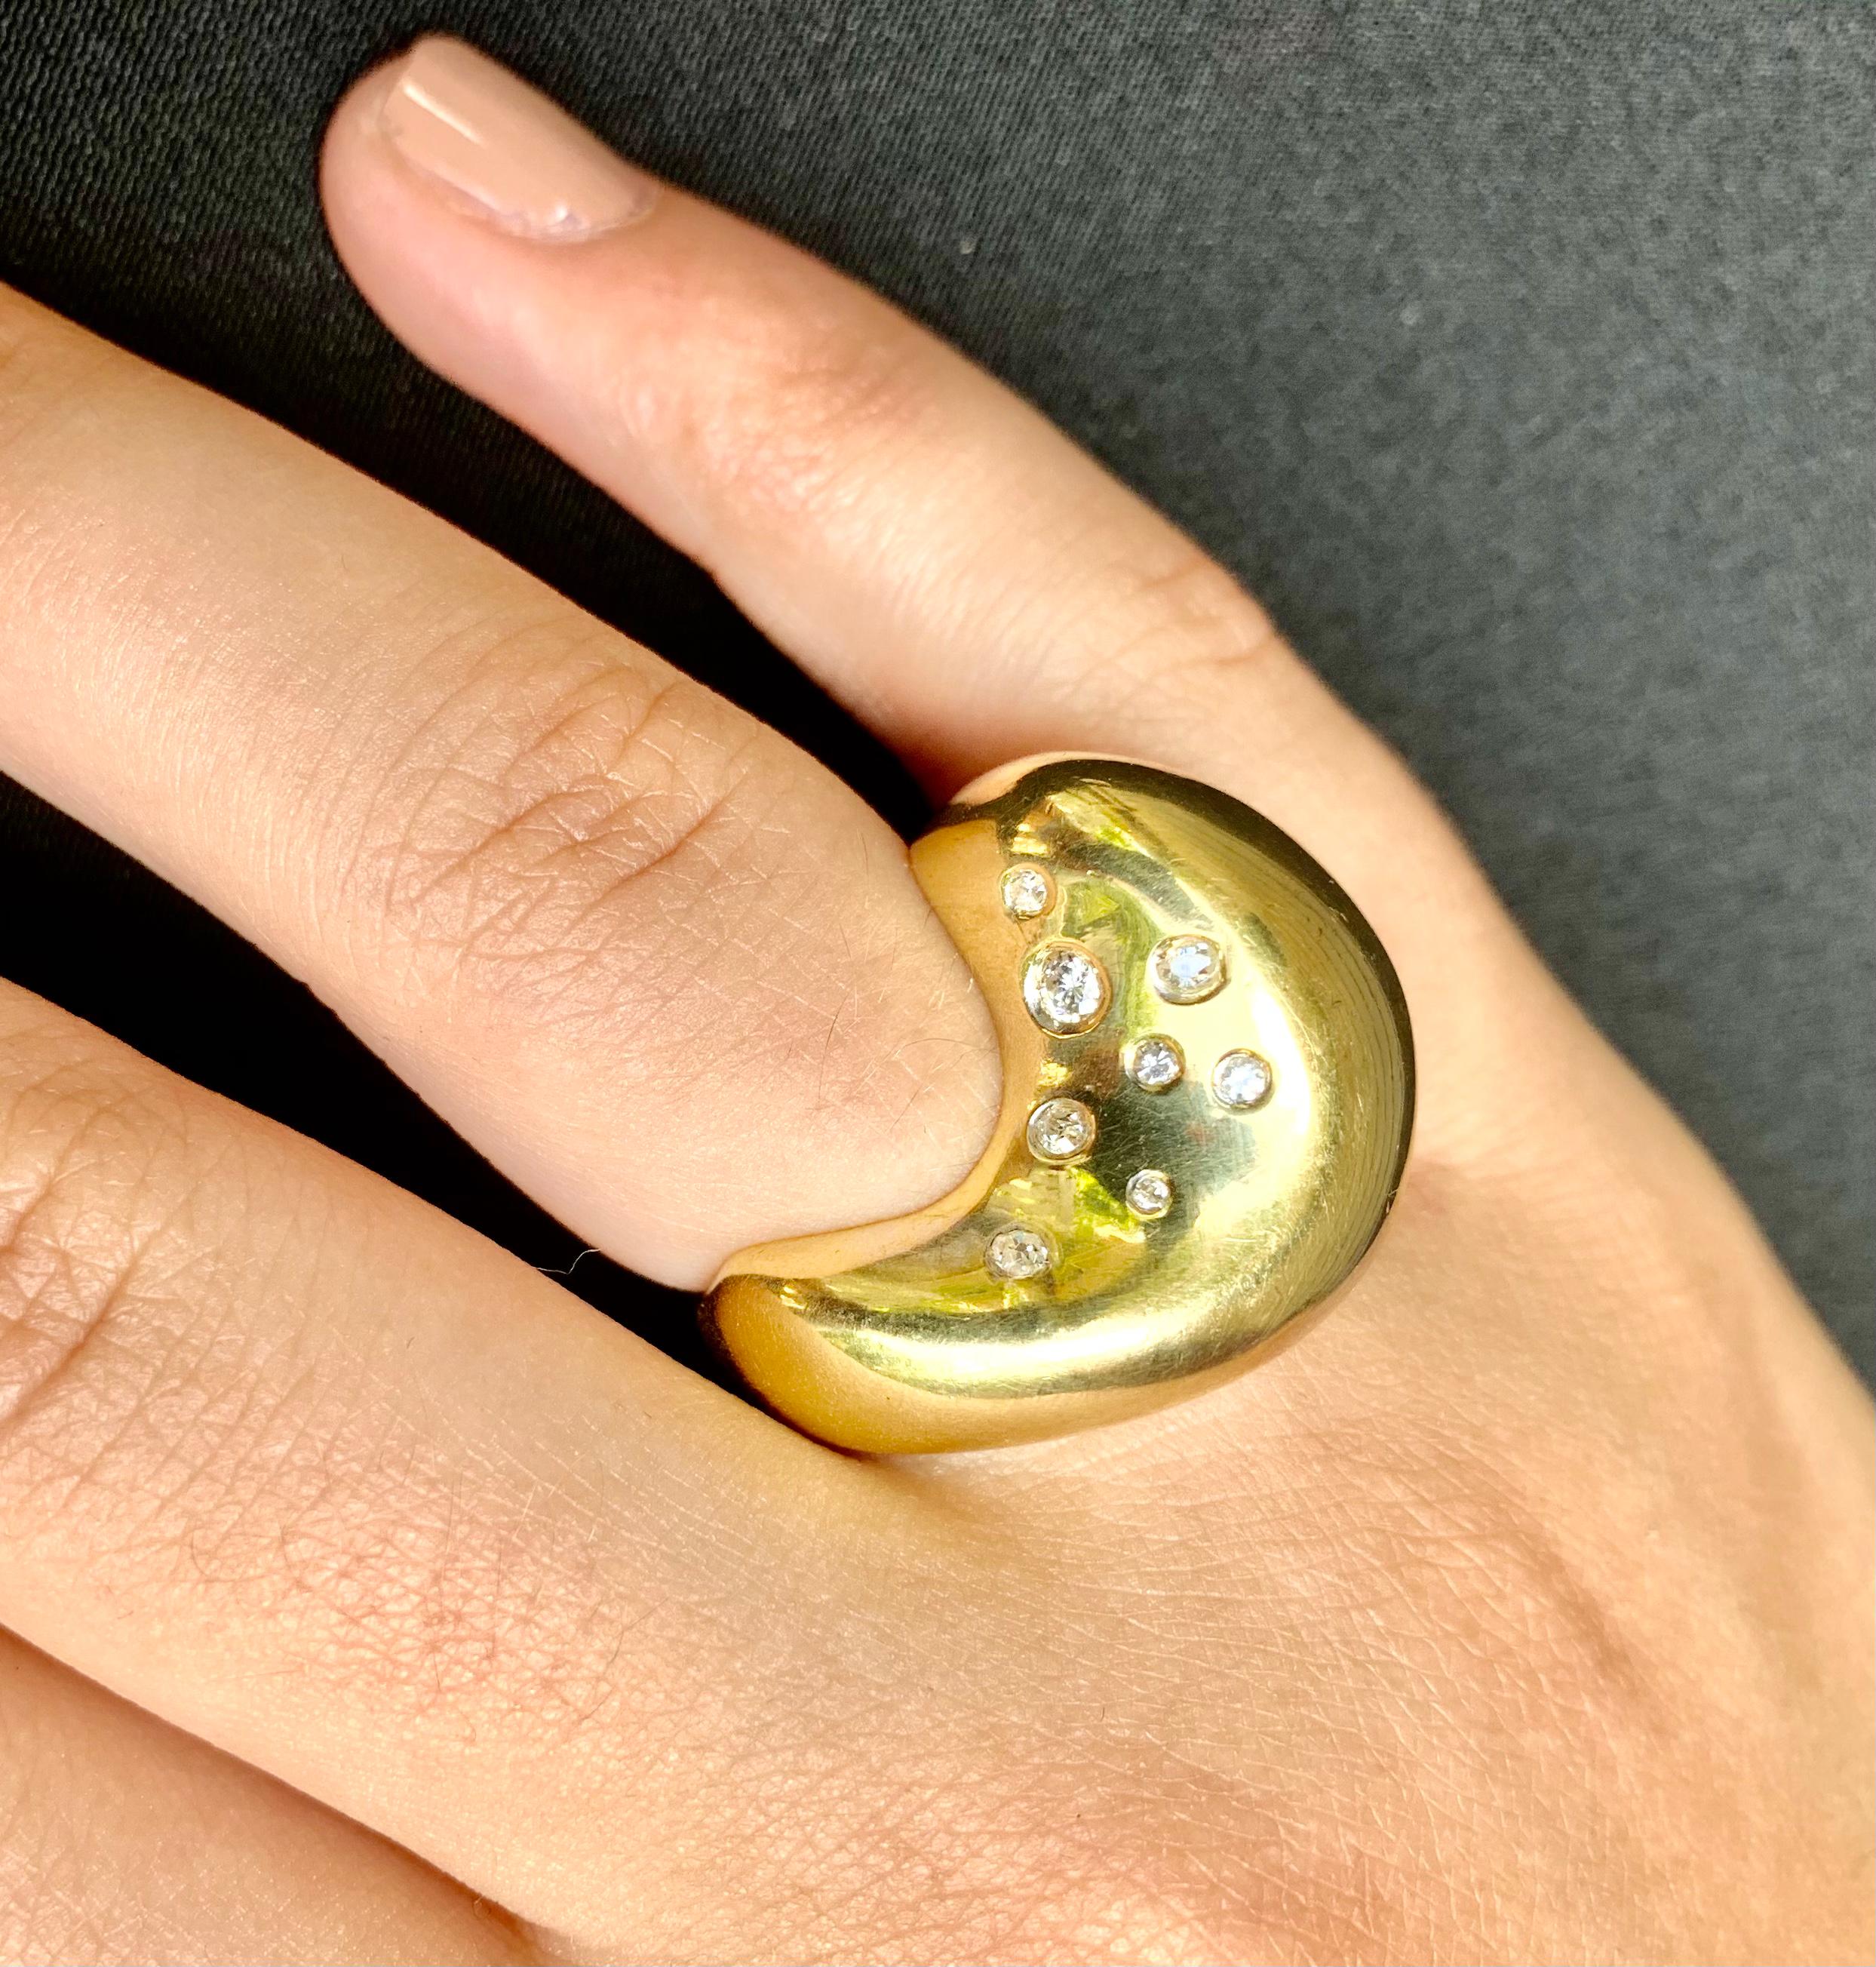 
Großer, ungewöhnlicher, künstlerischer Ring aus 18 Karat Gelbgold und Diamanten mit der Himmelskonstellation Mond und Sterne. 
Dieser wunderschöne Ring zeigt einen stilisierten Mond mit einem Diamantstern auf der einen Seite und einer Konstellation